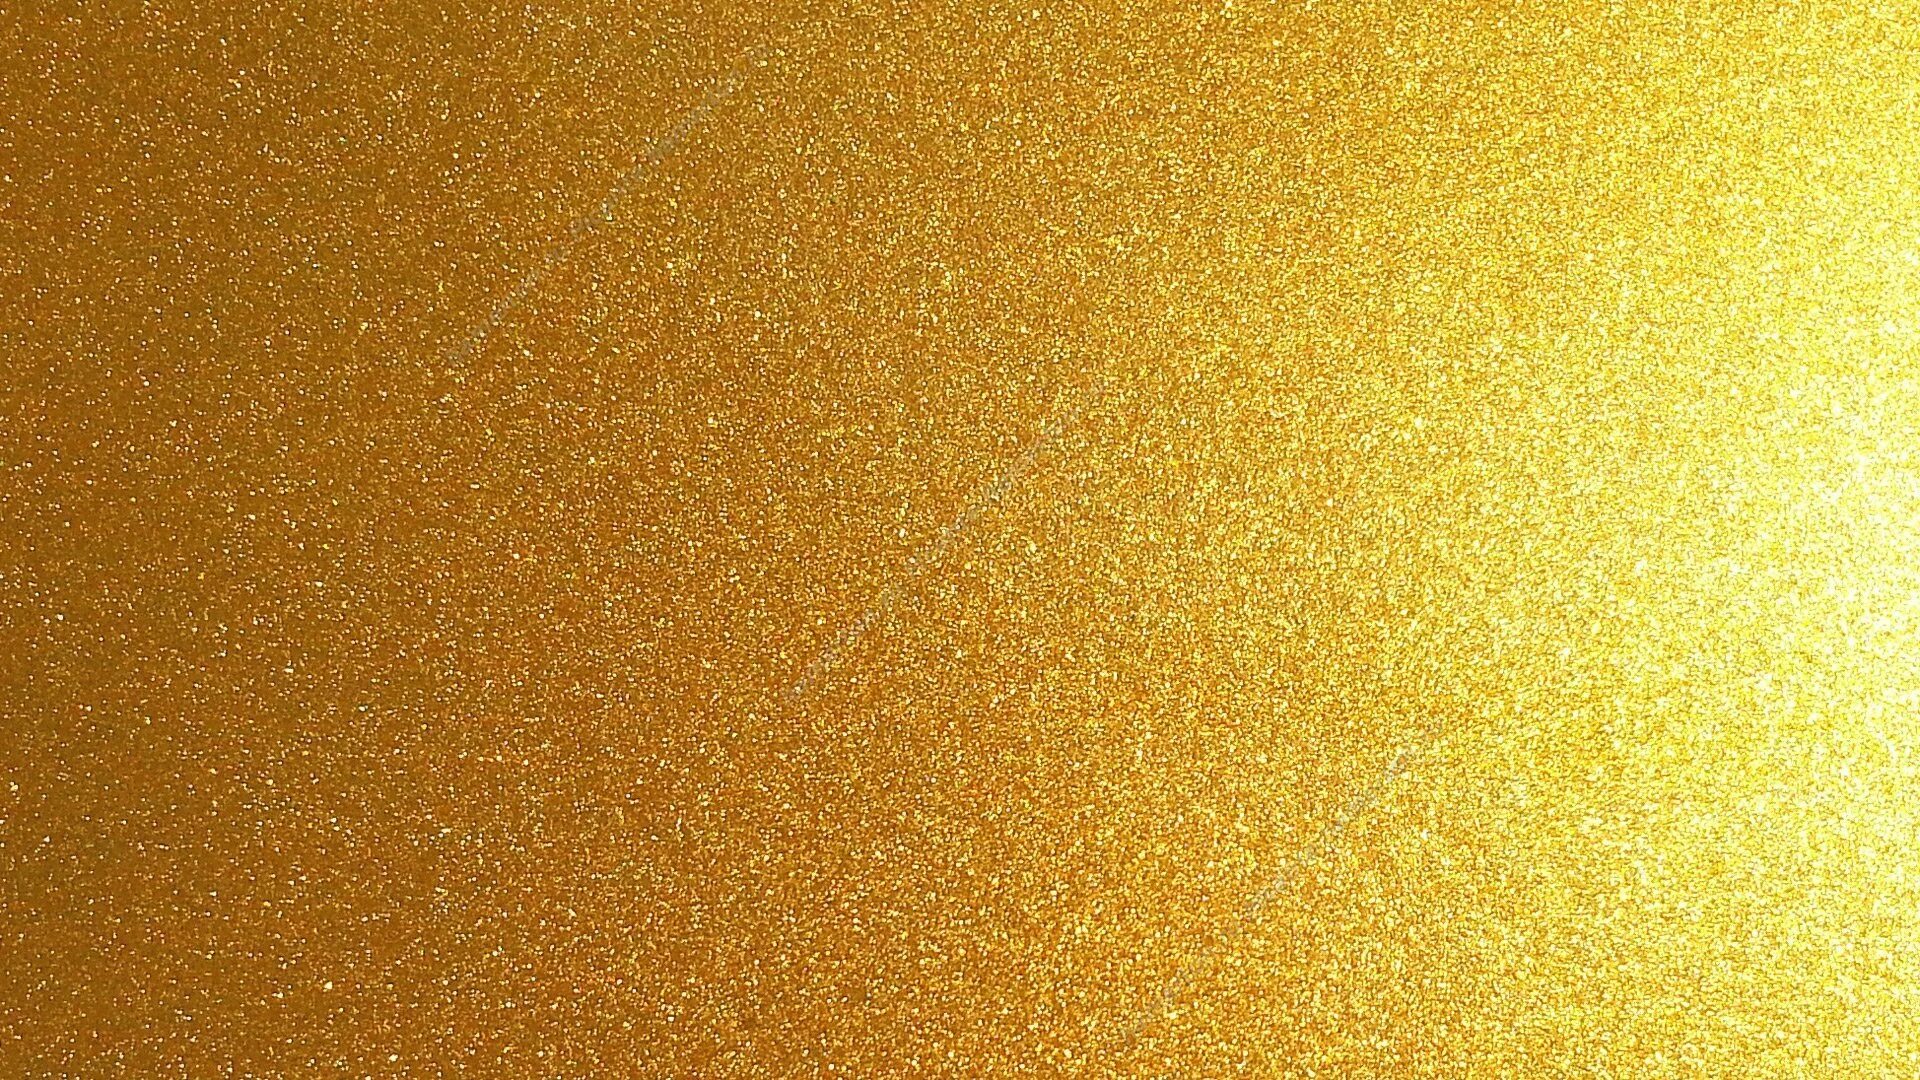 Metallic gold